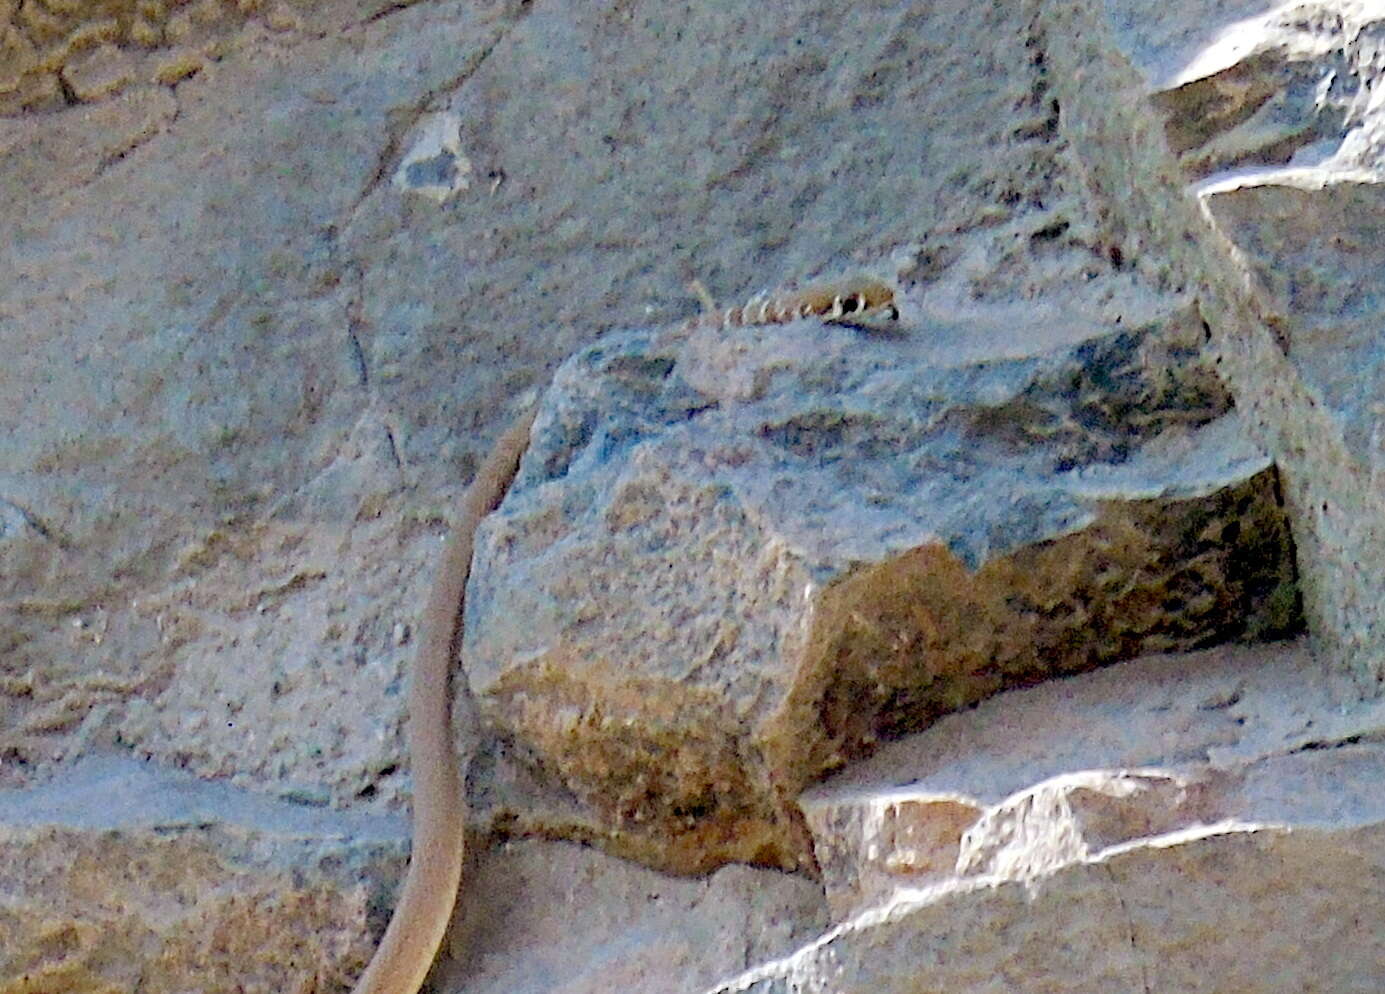 Image of Dahl's Whip Snake